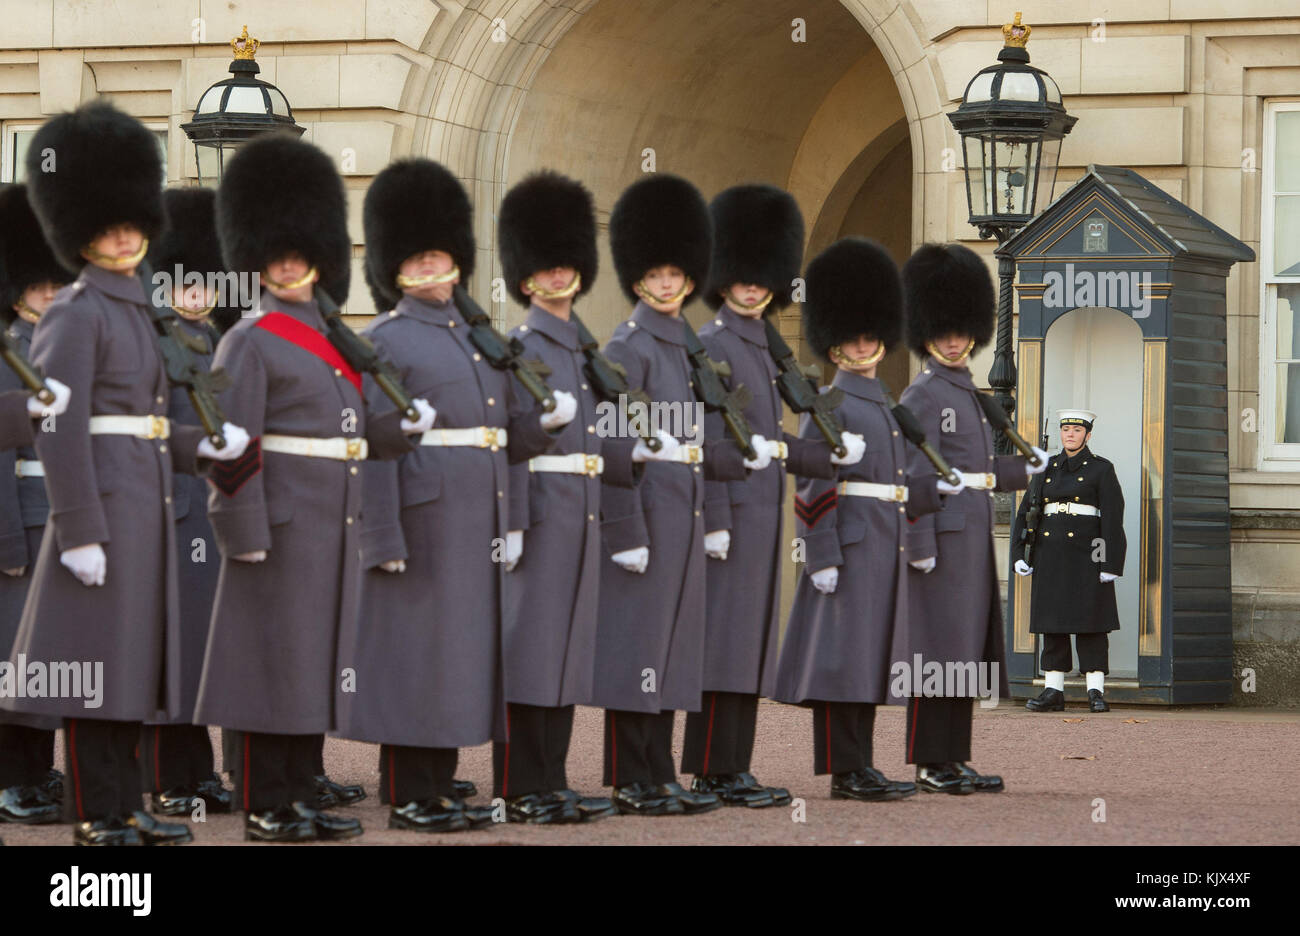 Matelot laura suttle (à droite) prend sa place dans une guérite, comme les marins de la Royal Navy effectuer la cérémonie de relève de la garde à Buckingham Palace, Londres, pour la première fois de son 357 ans d'histoire. Banque D'Images